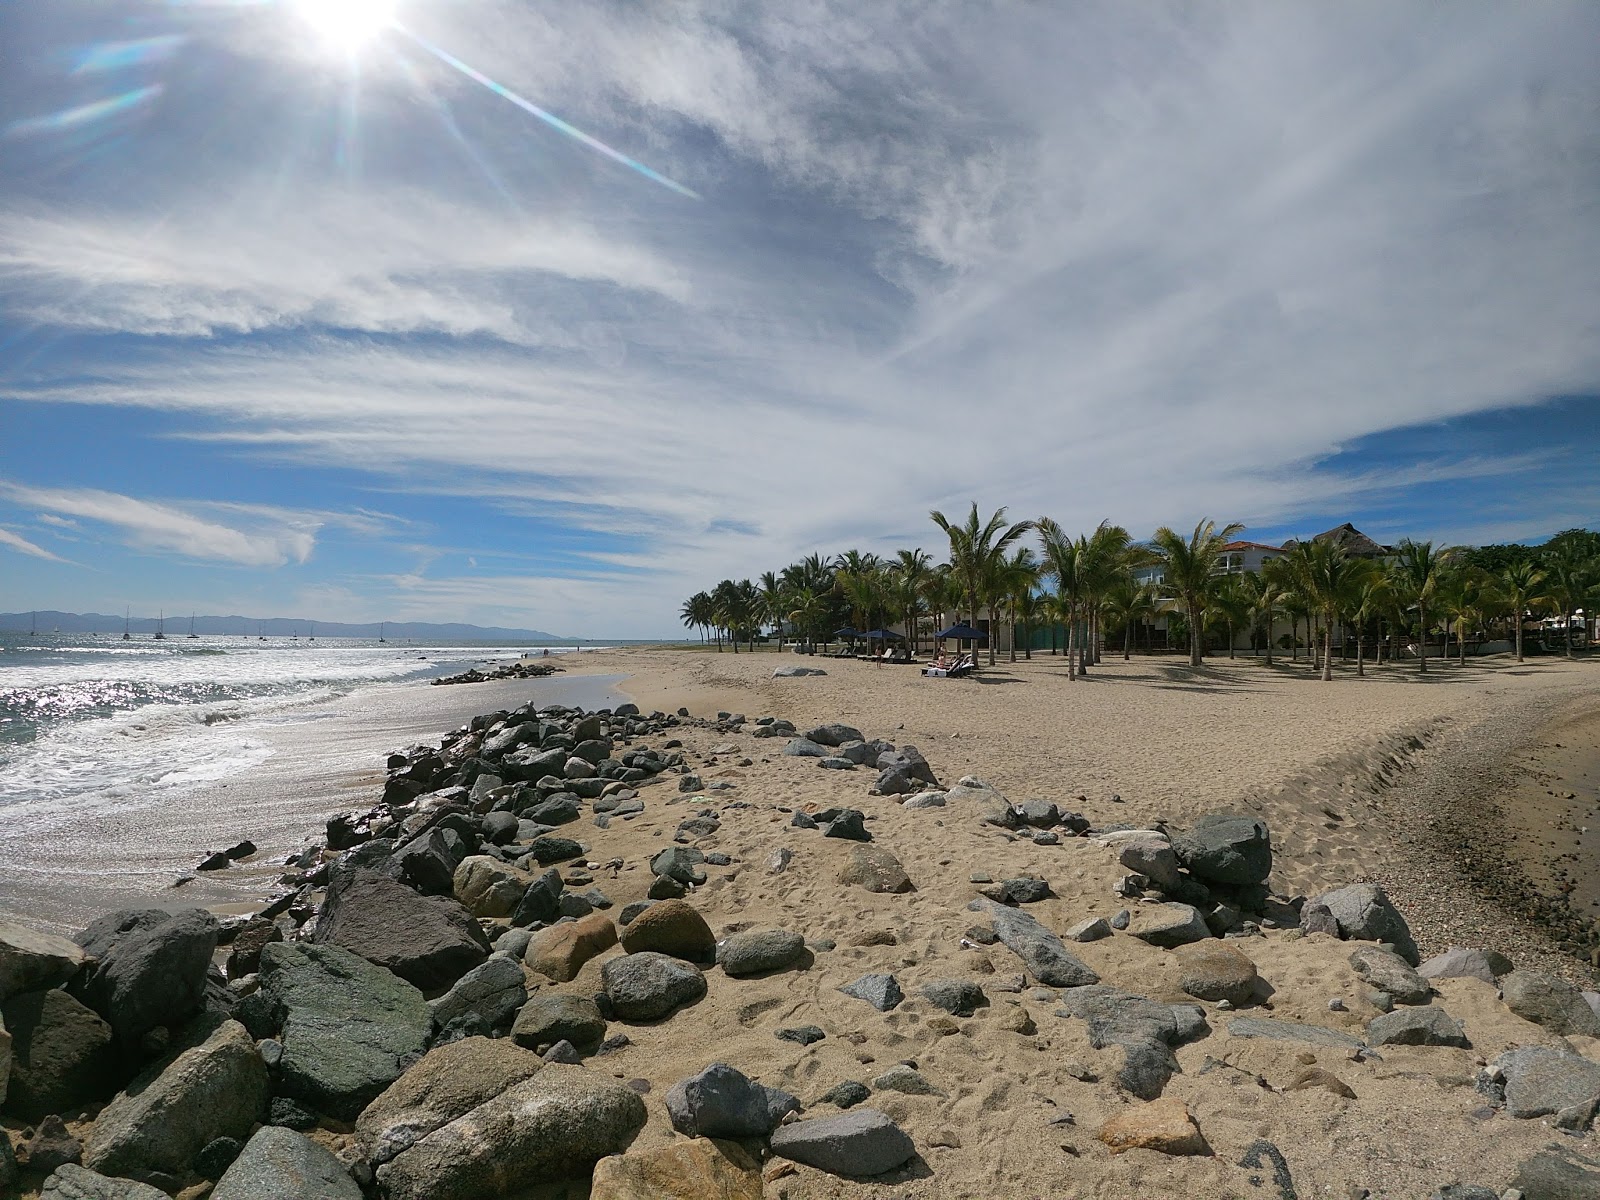 Zdjęcie Manzanilla beach I częściowo obszar hotelowy